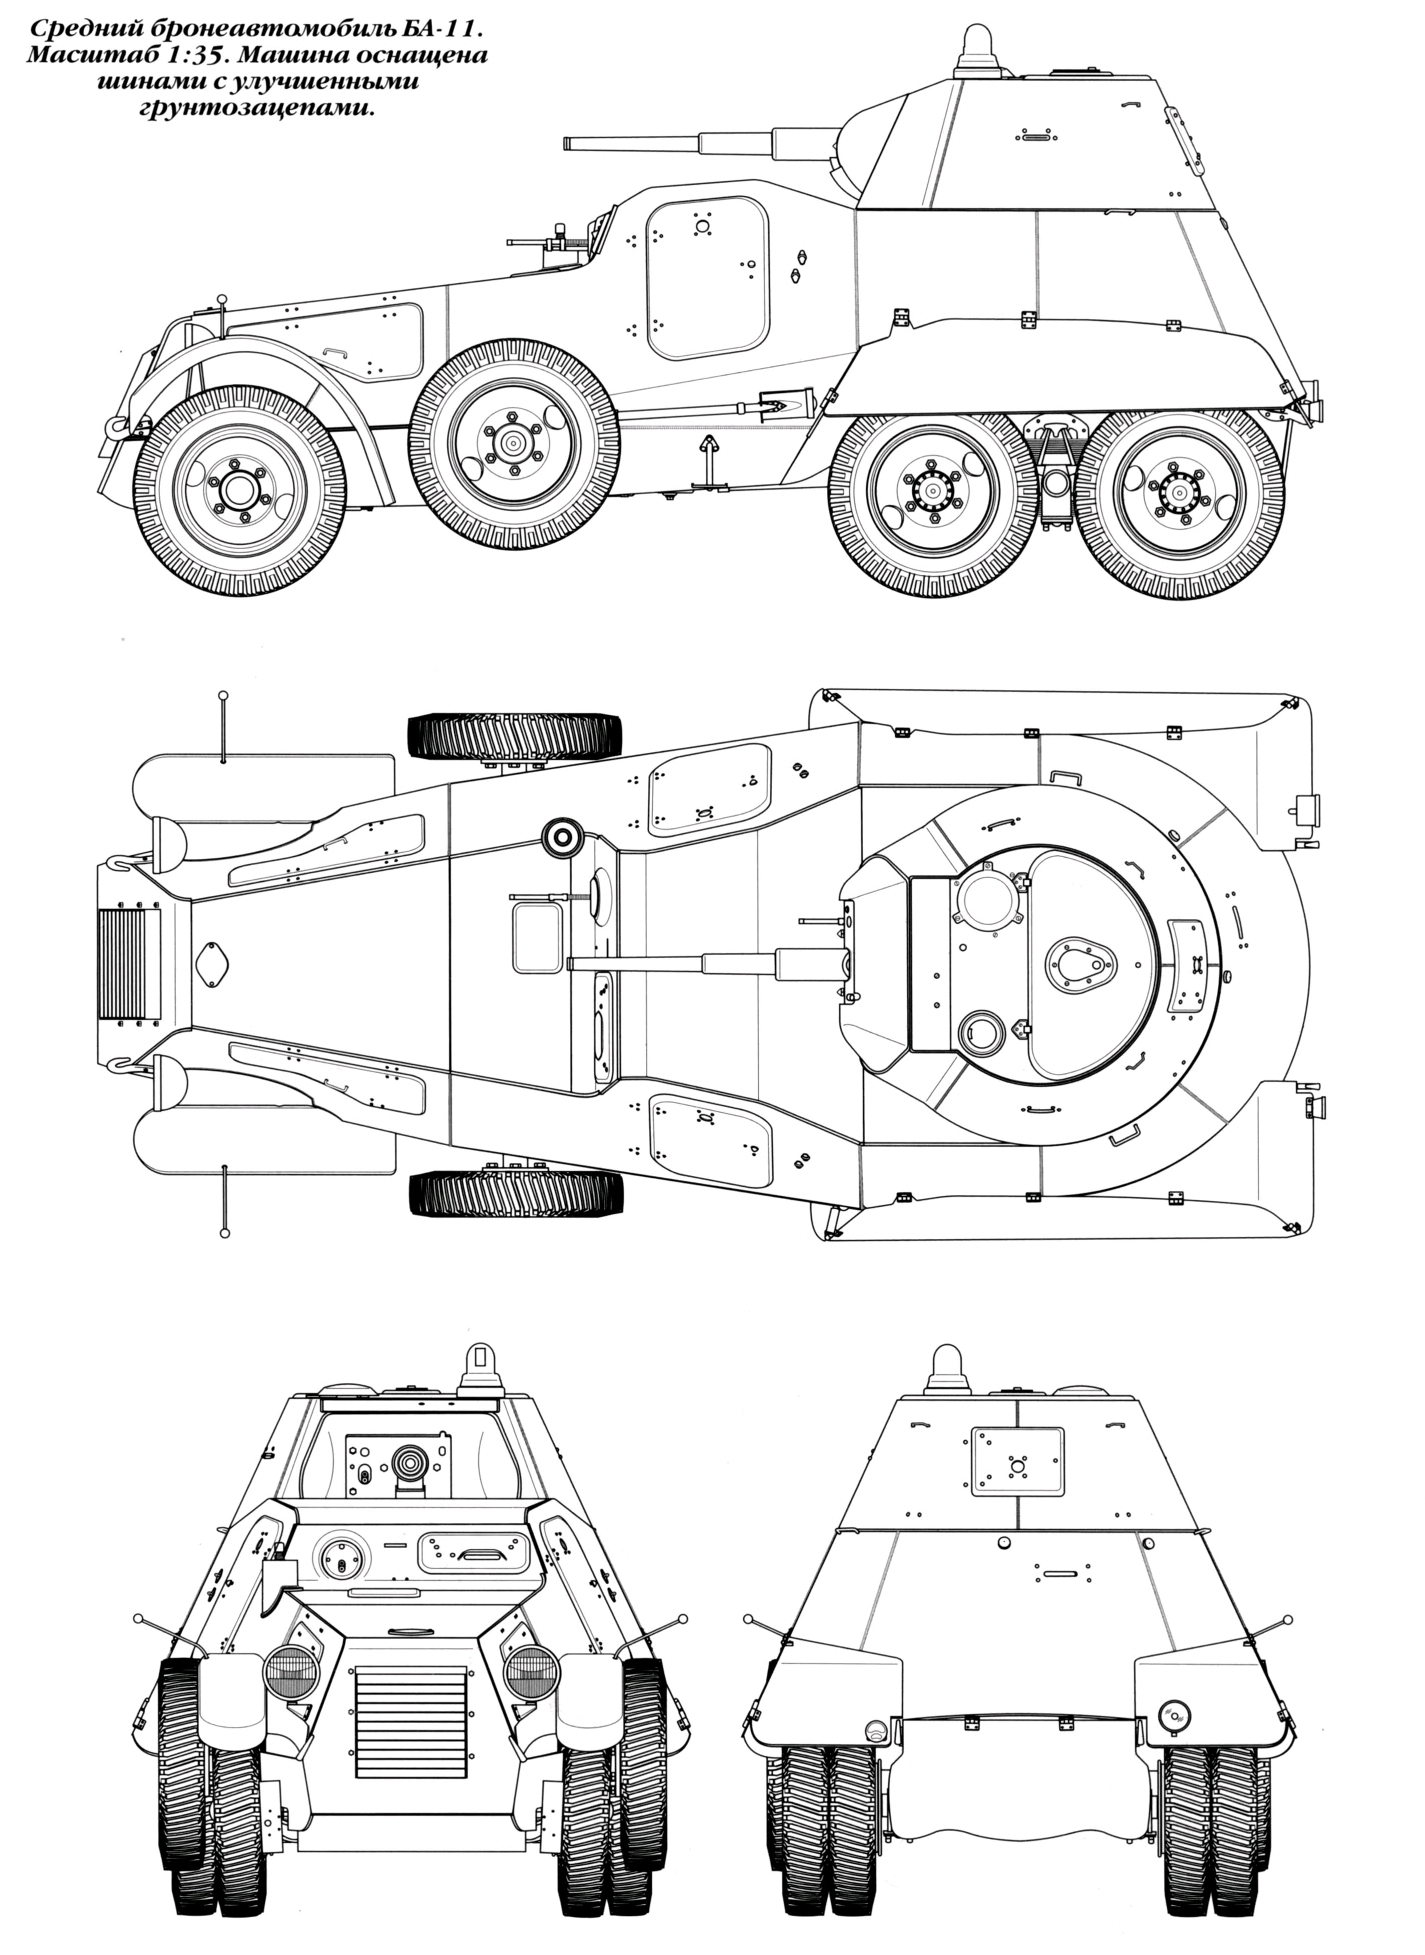 《从军》莫斯科战役里的金币载具—ba11重型装甲车